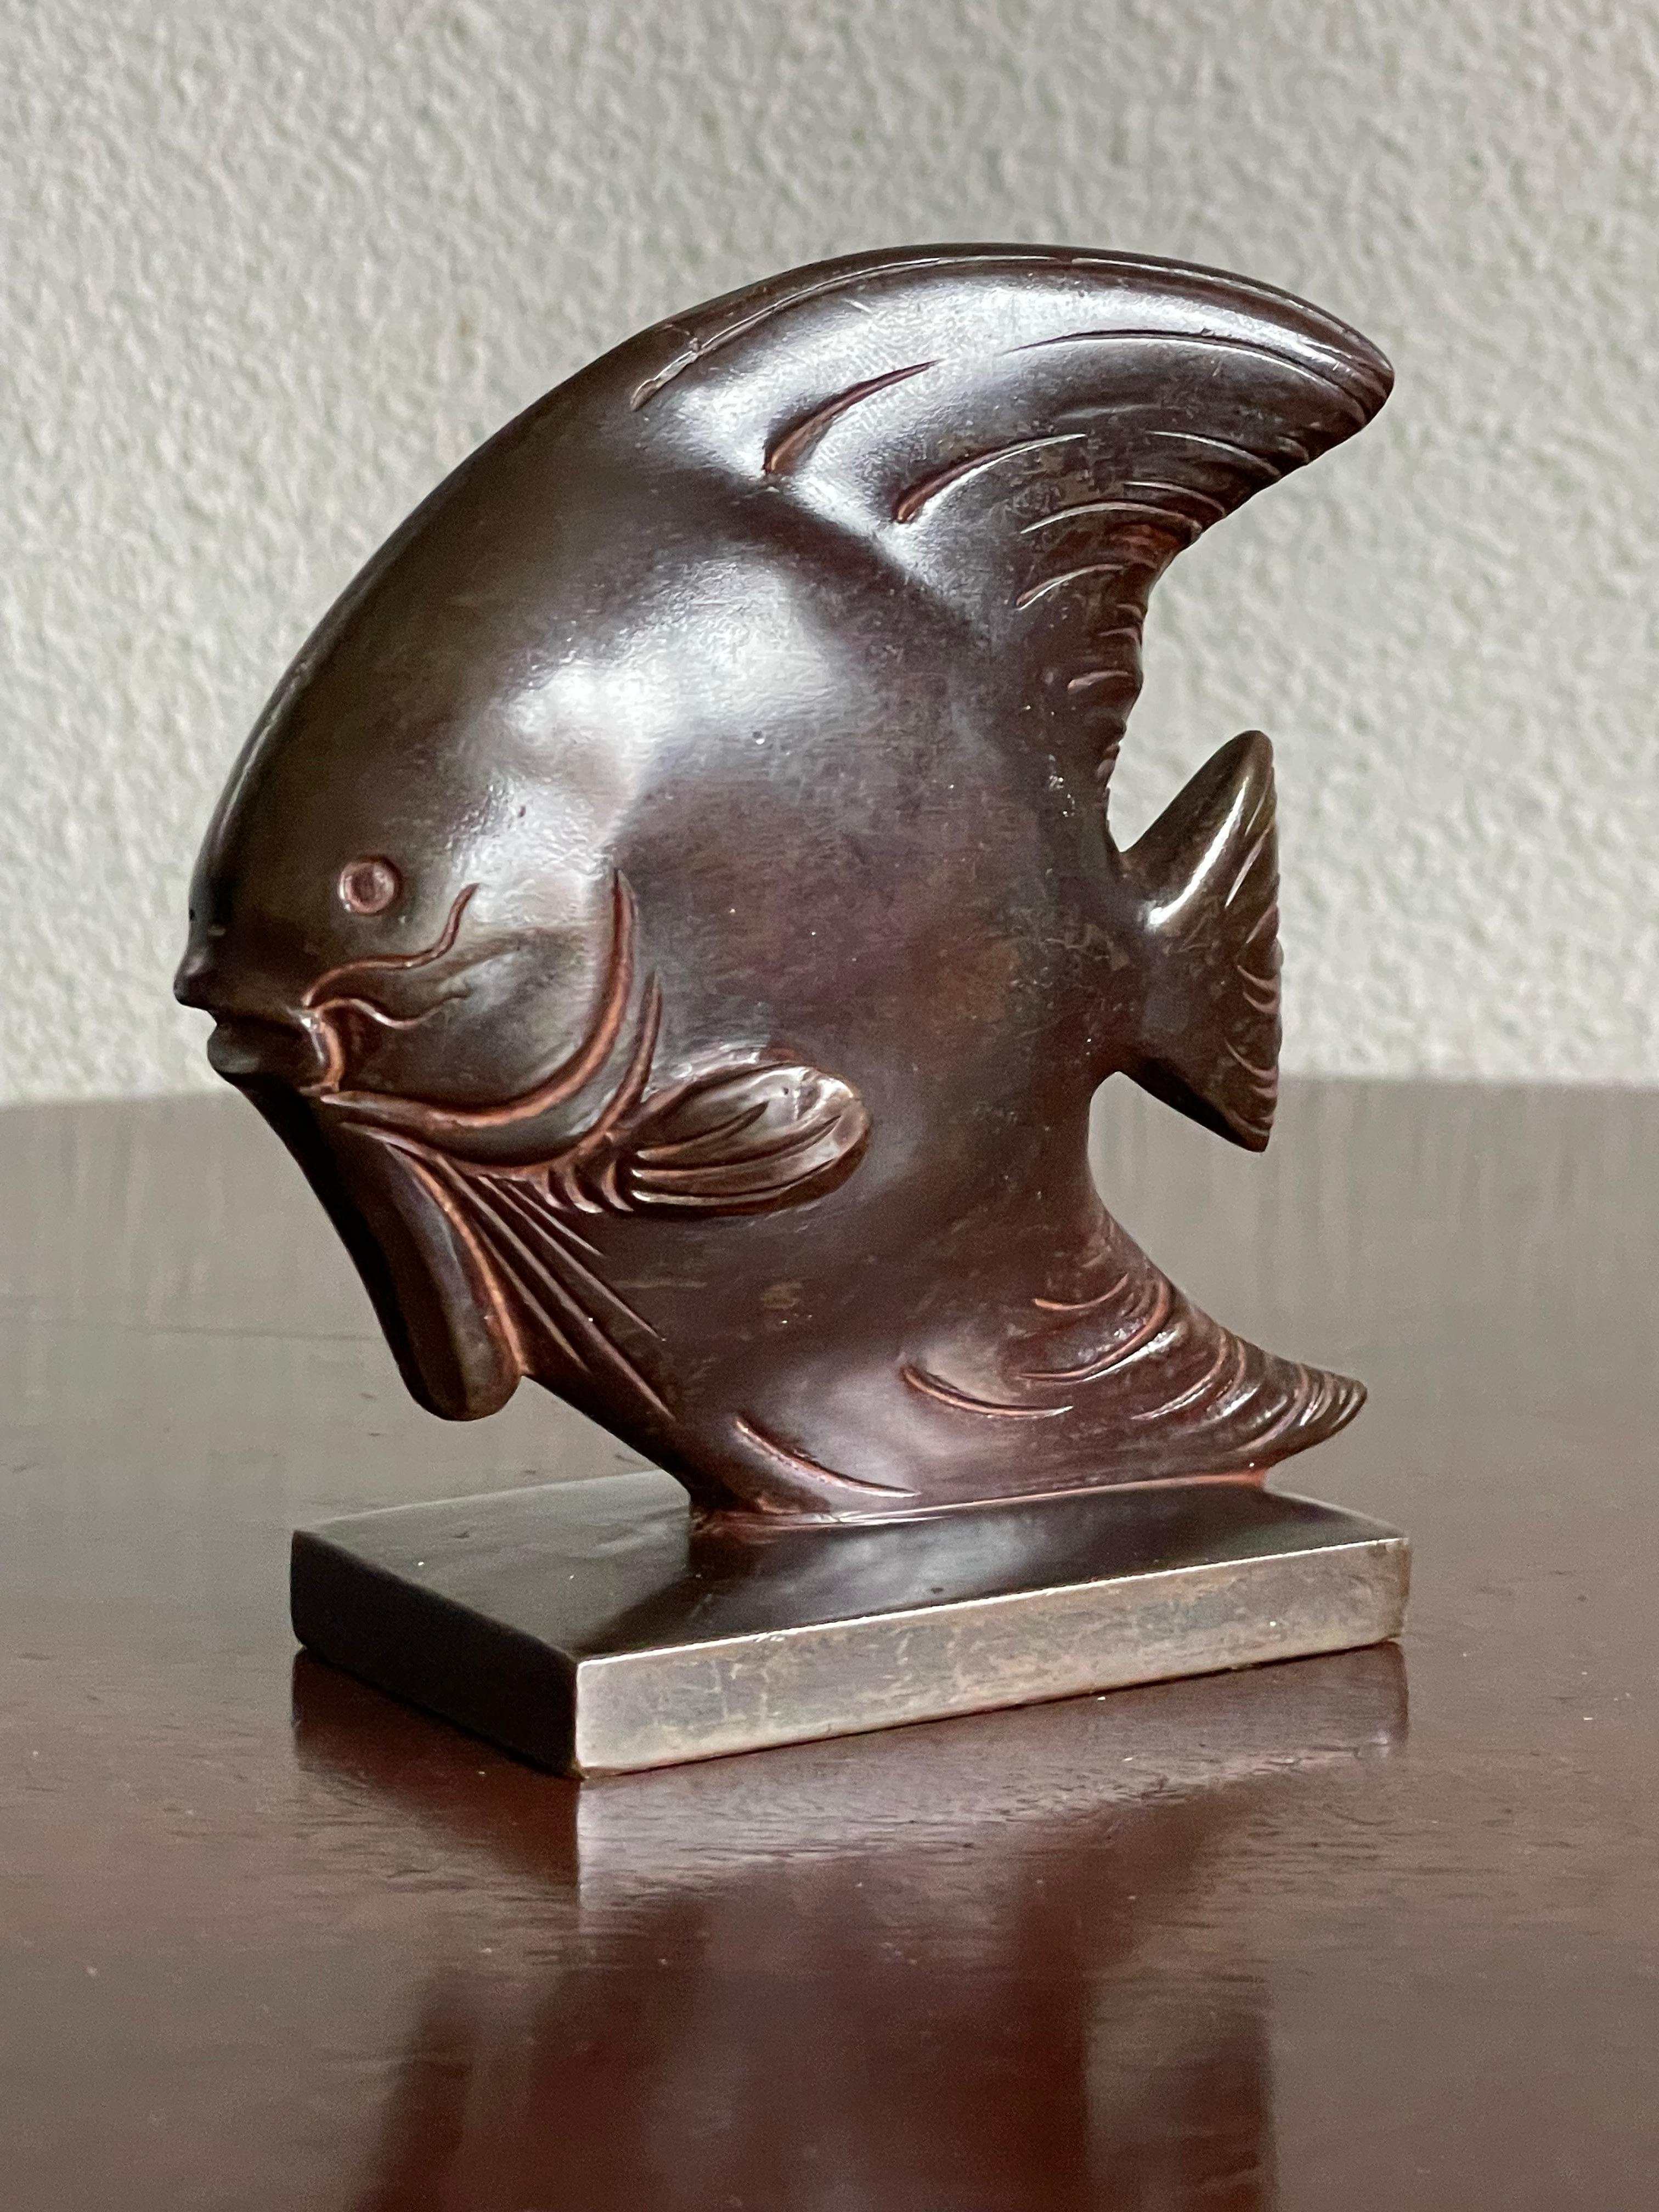 Merveille esthétique, petite sculpture de poisson discus en bronze.

Cette étonnante sculpture en bronze de type 